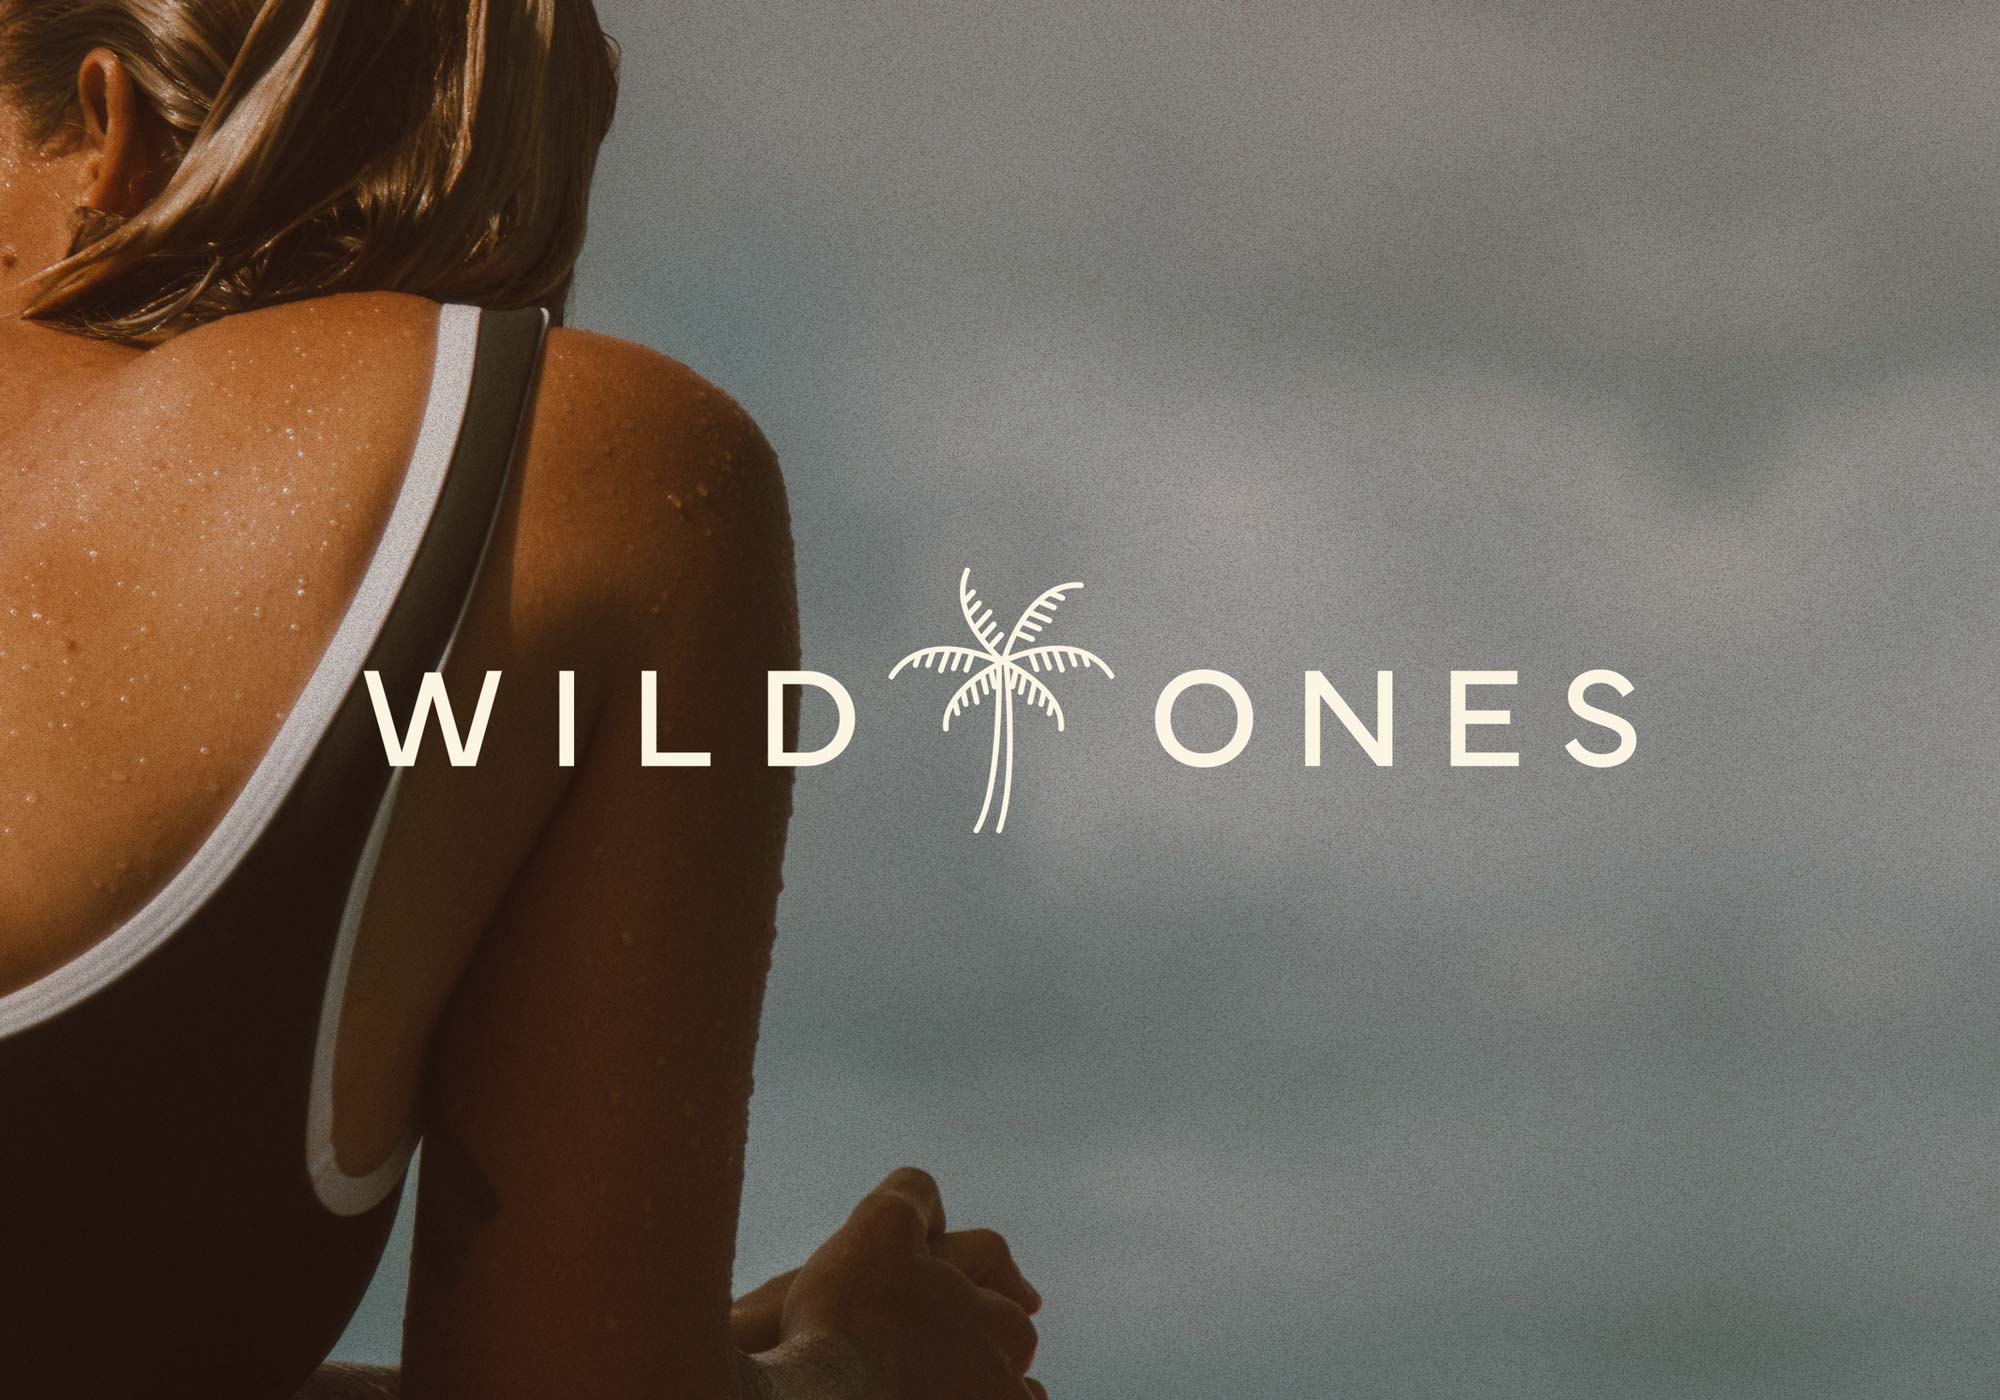 Wild Ones by The Brand Bazaar